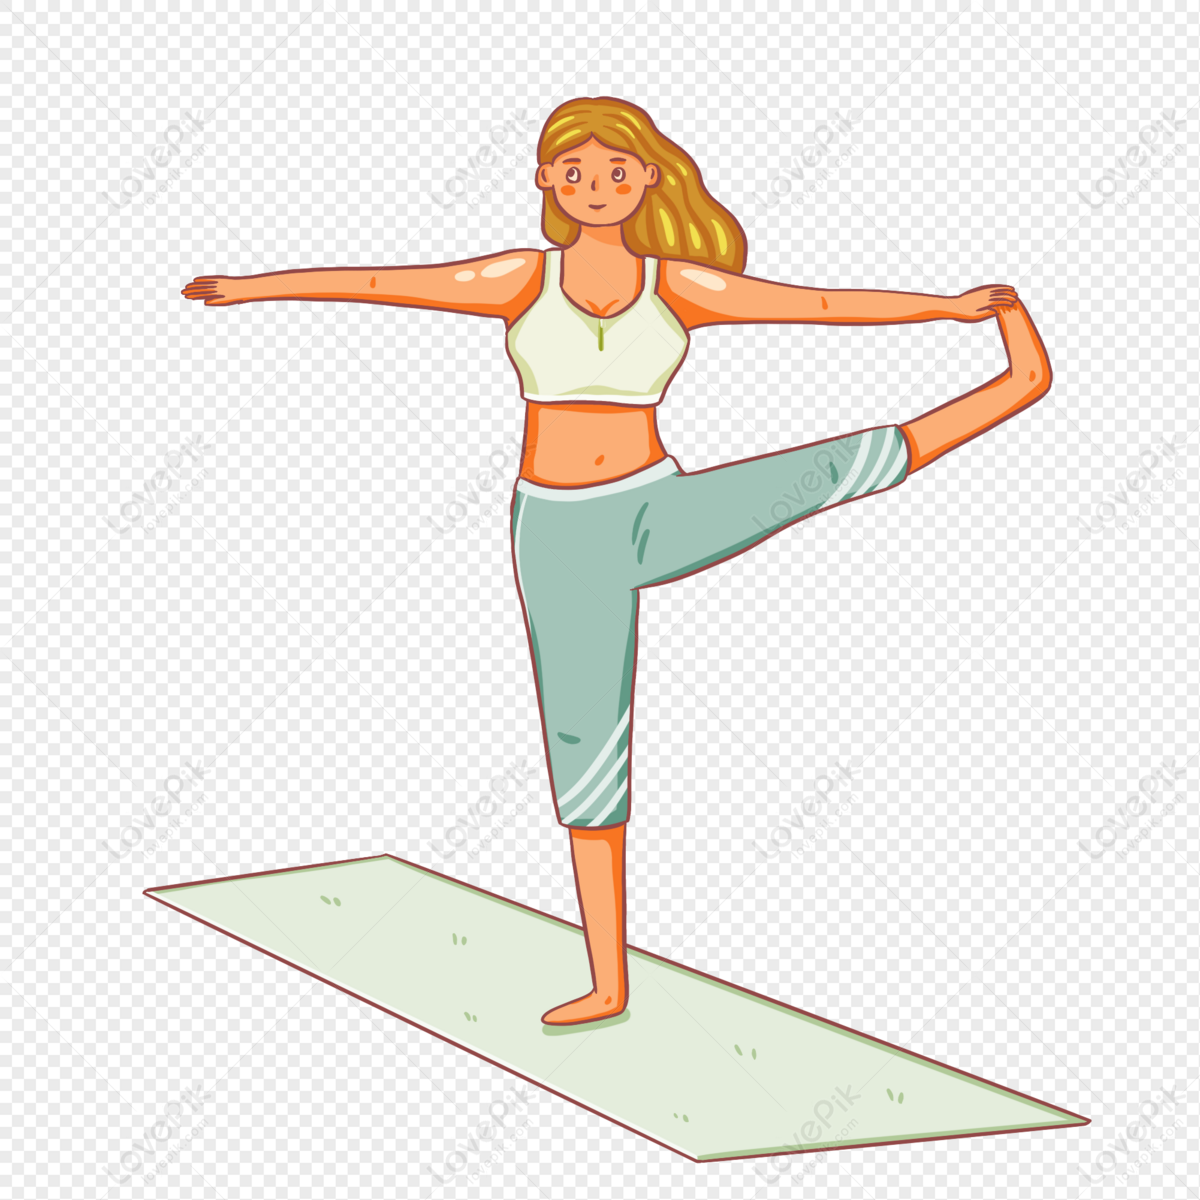 Hình ảnh Cô Gái Vẽ Tay Tập Yoga PNG Miễn Phí Tải Về - Lovepik